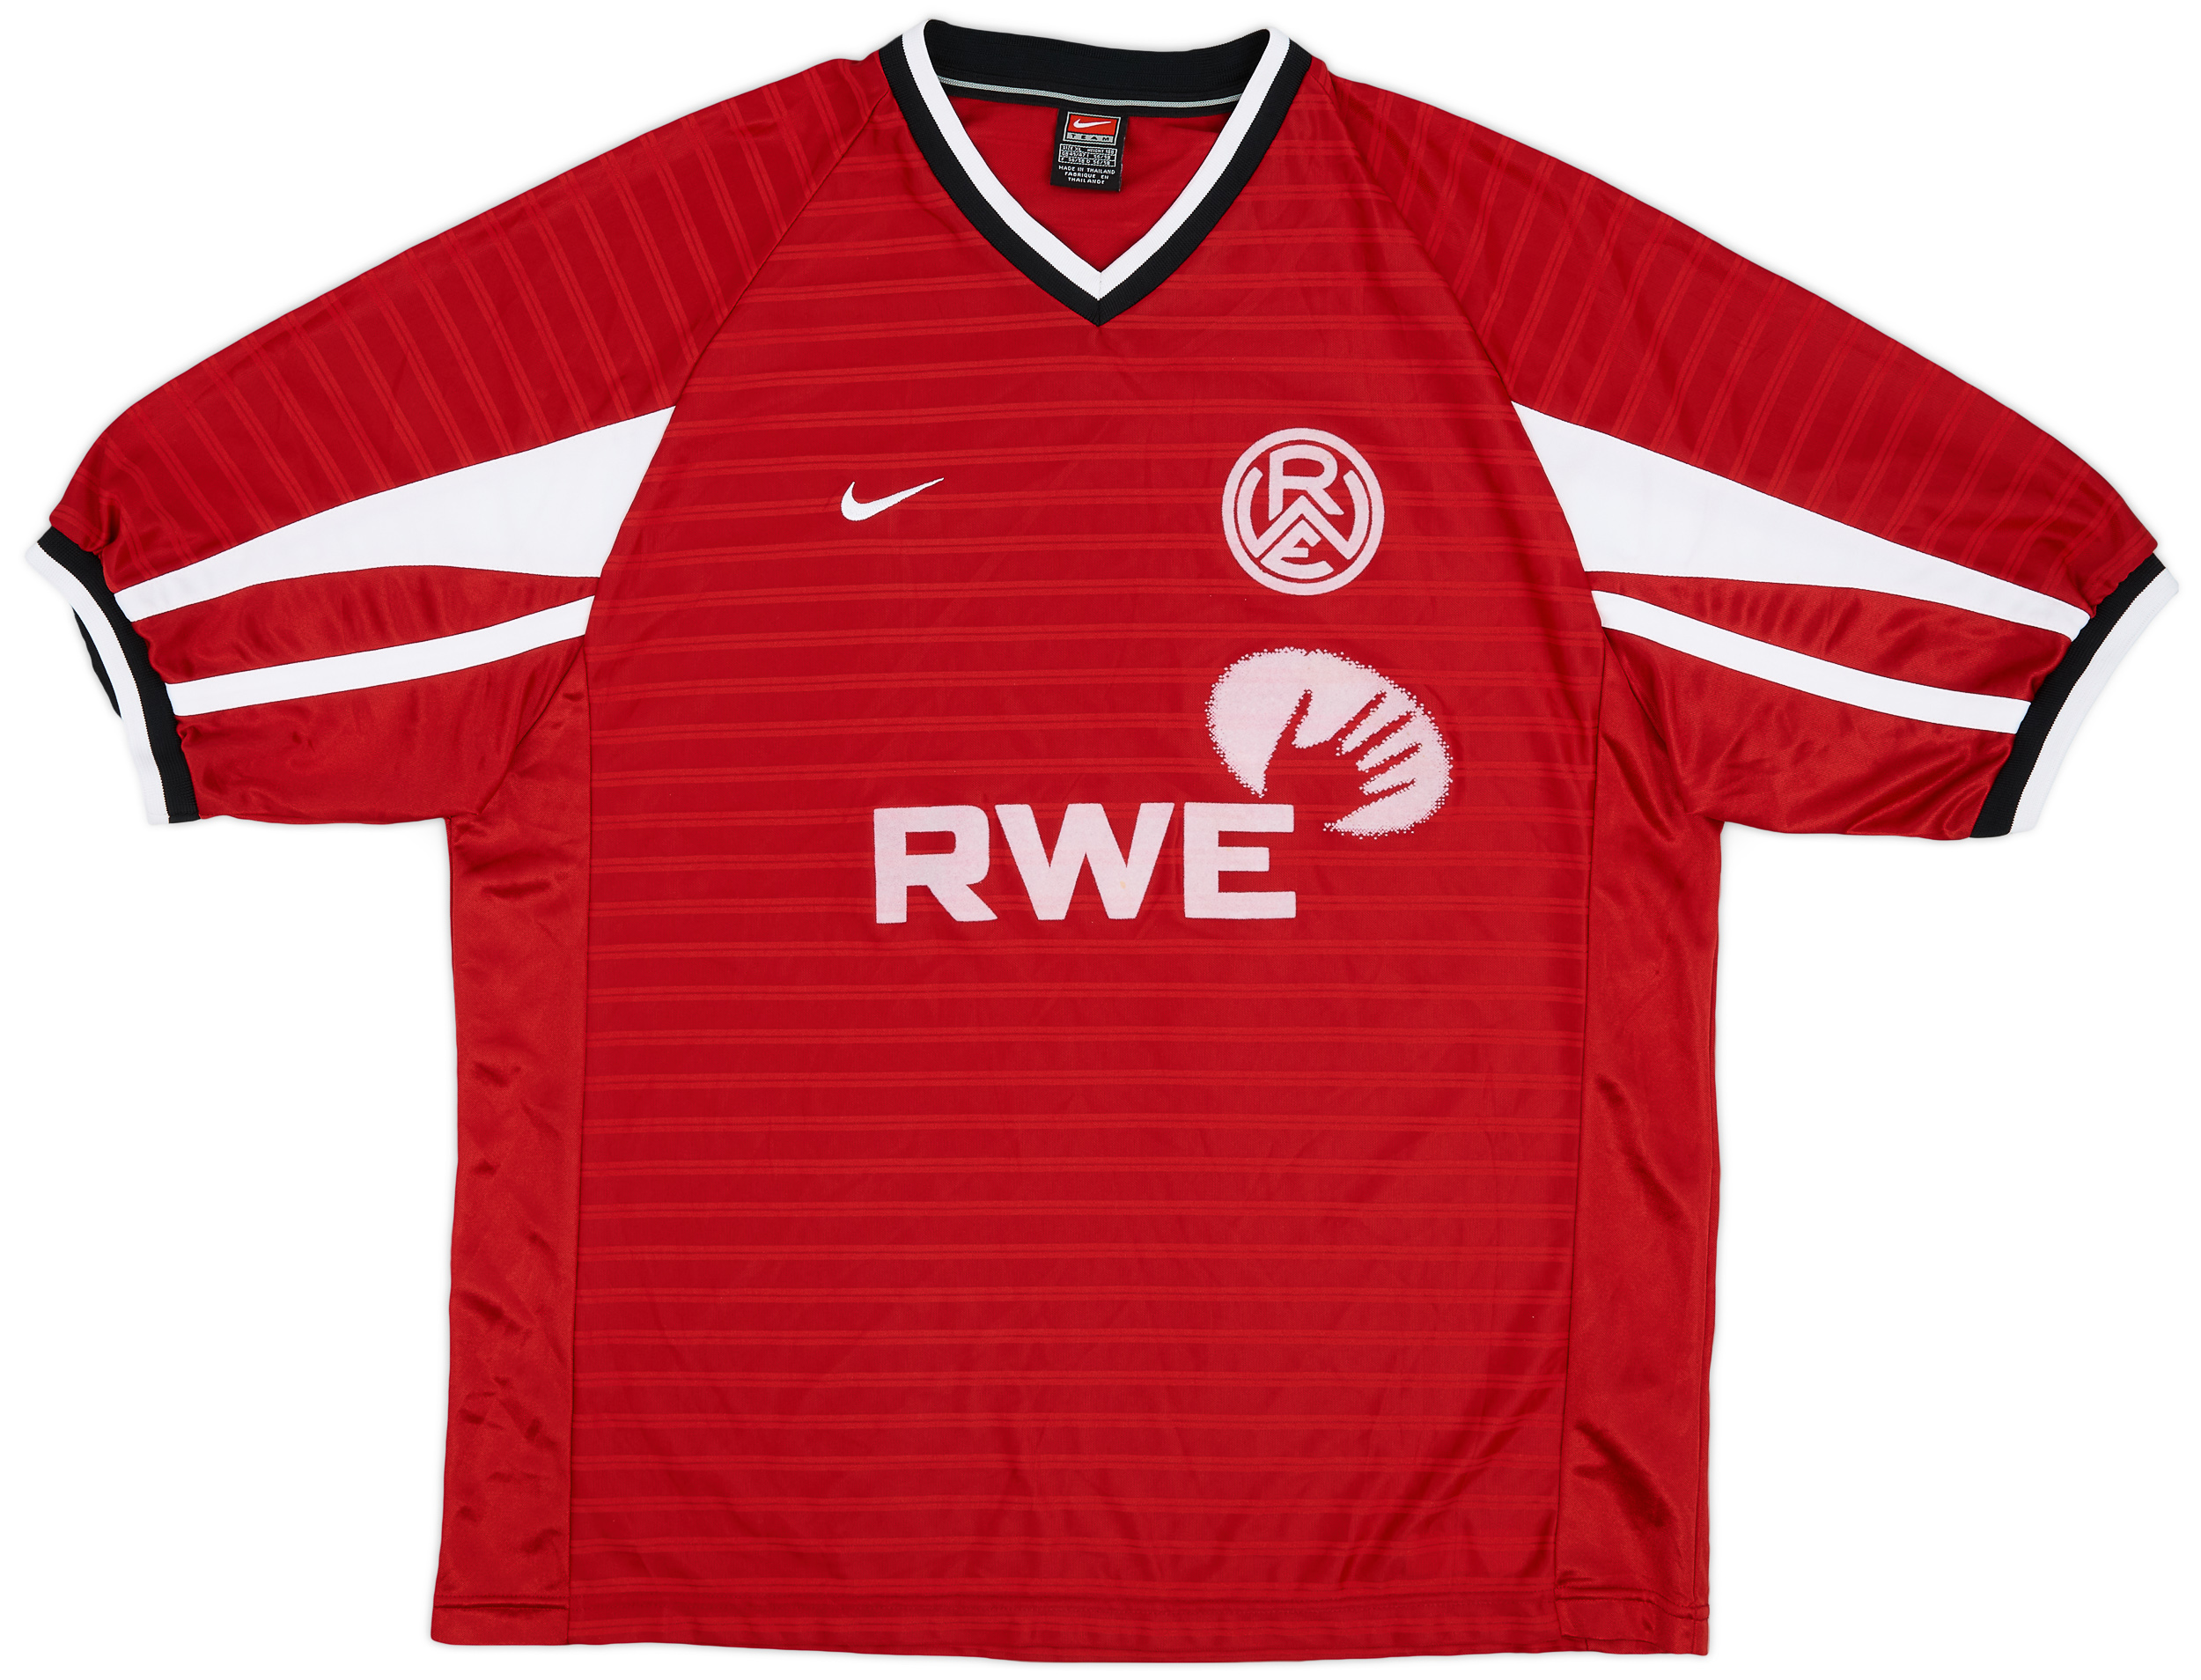 Rot-Weiss Essen  home shirt (Original)